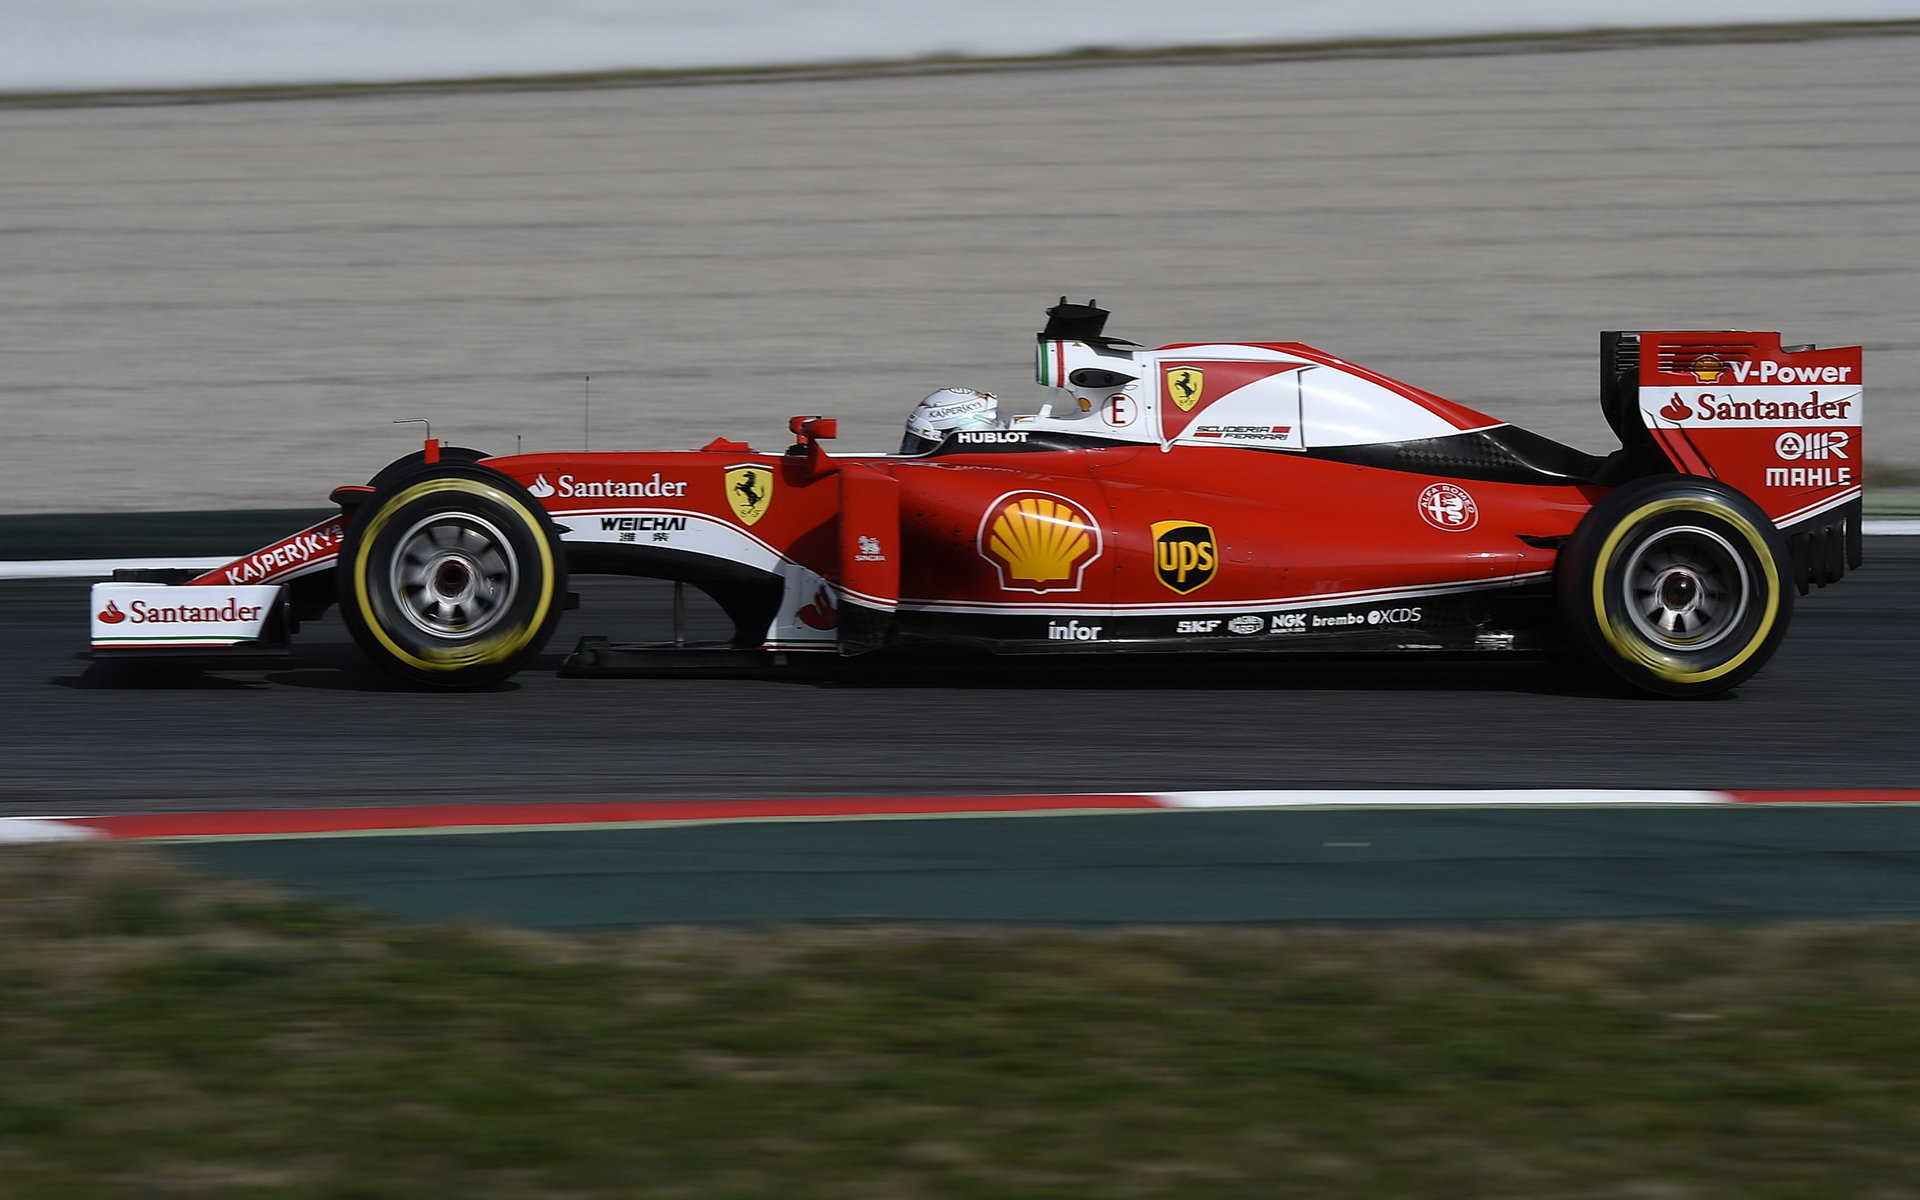 Sebastian Vettel s vozem Ferrari SF16-H